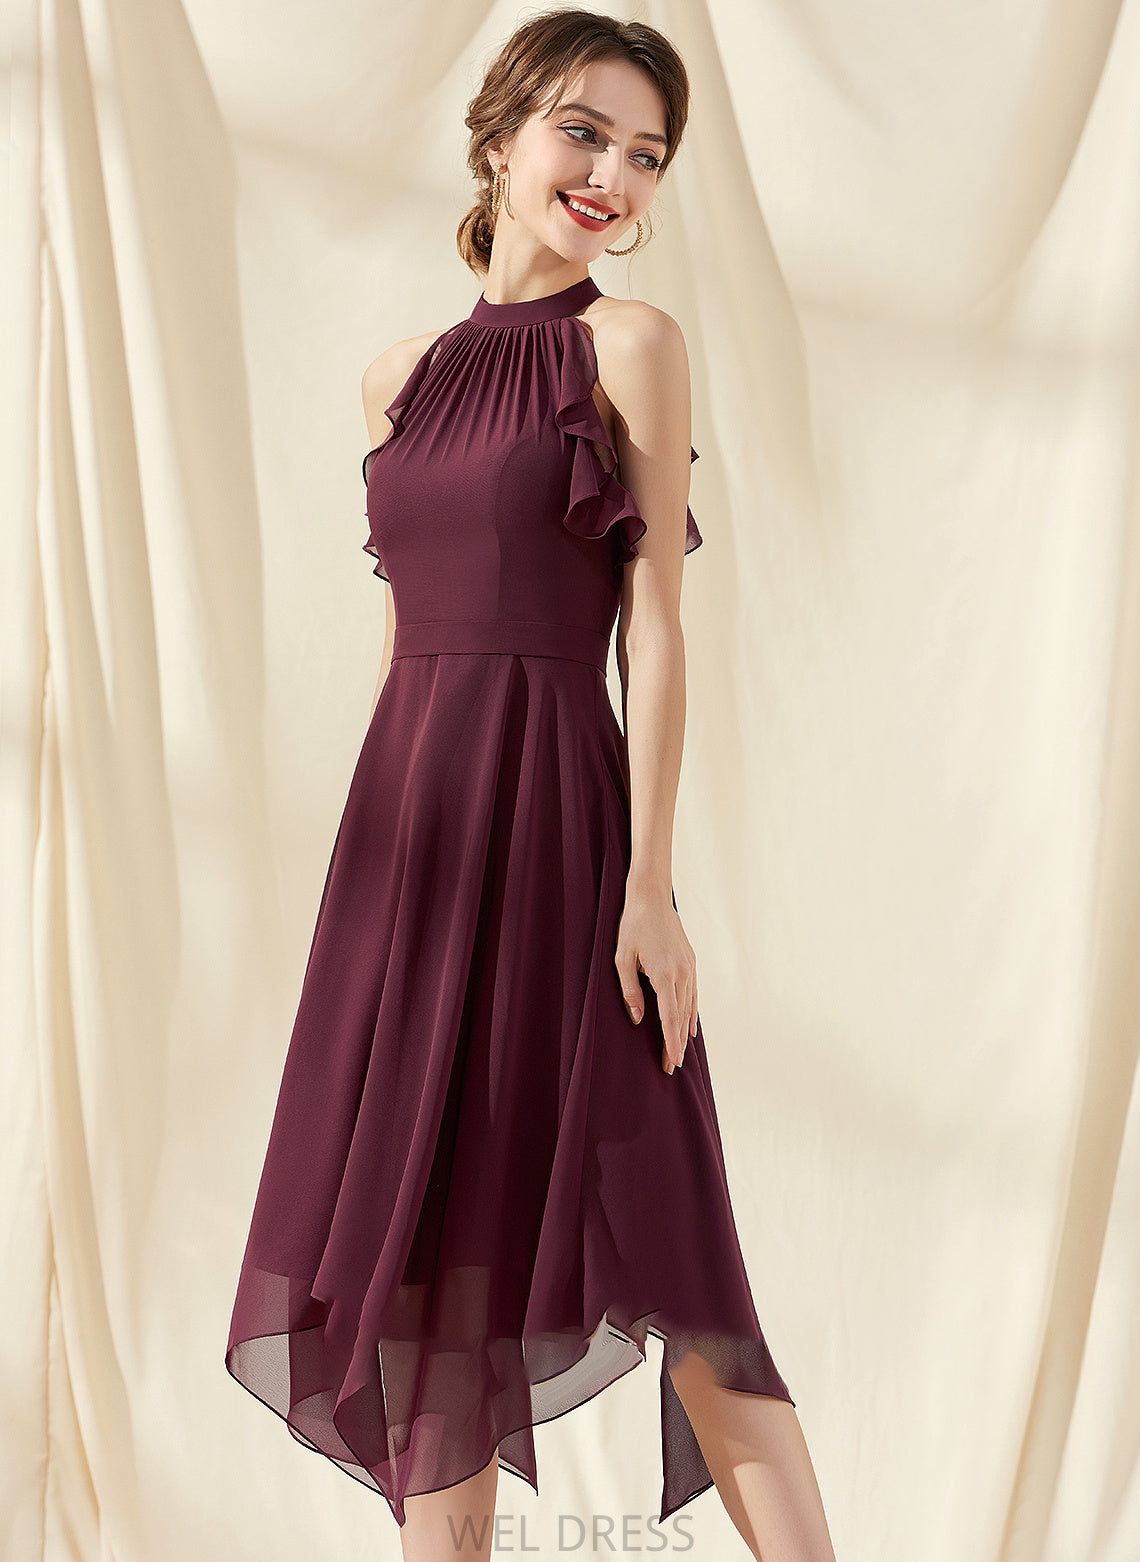 Silhouette Length Neckline CascadingRuffles ScoopNeck Fabric Tea-Length Embellishment A-Line Camila Natural Waist Floor Length